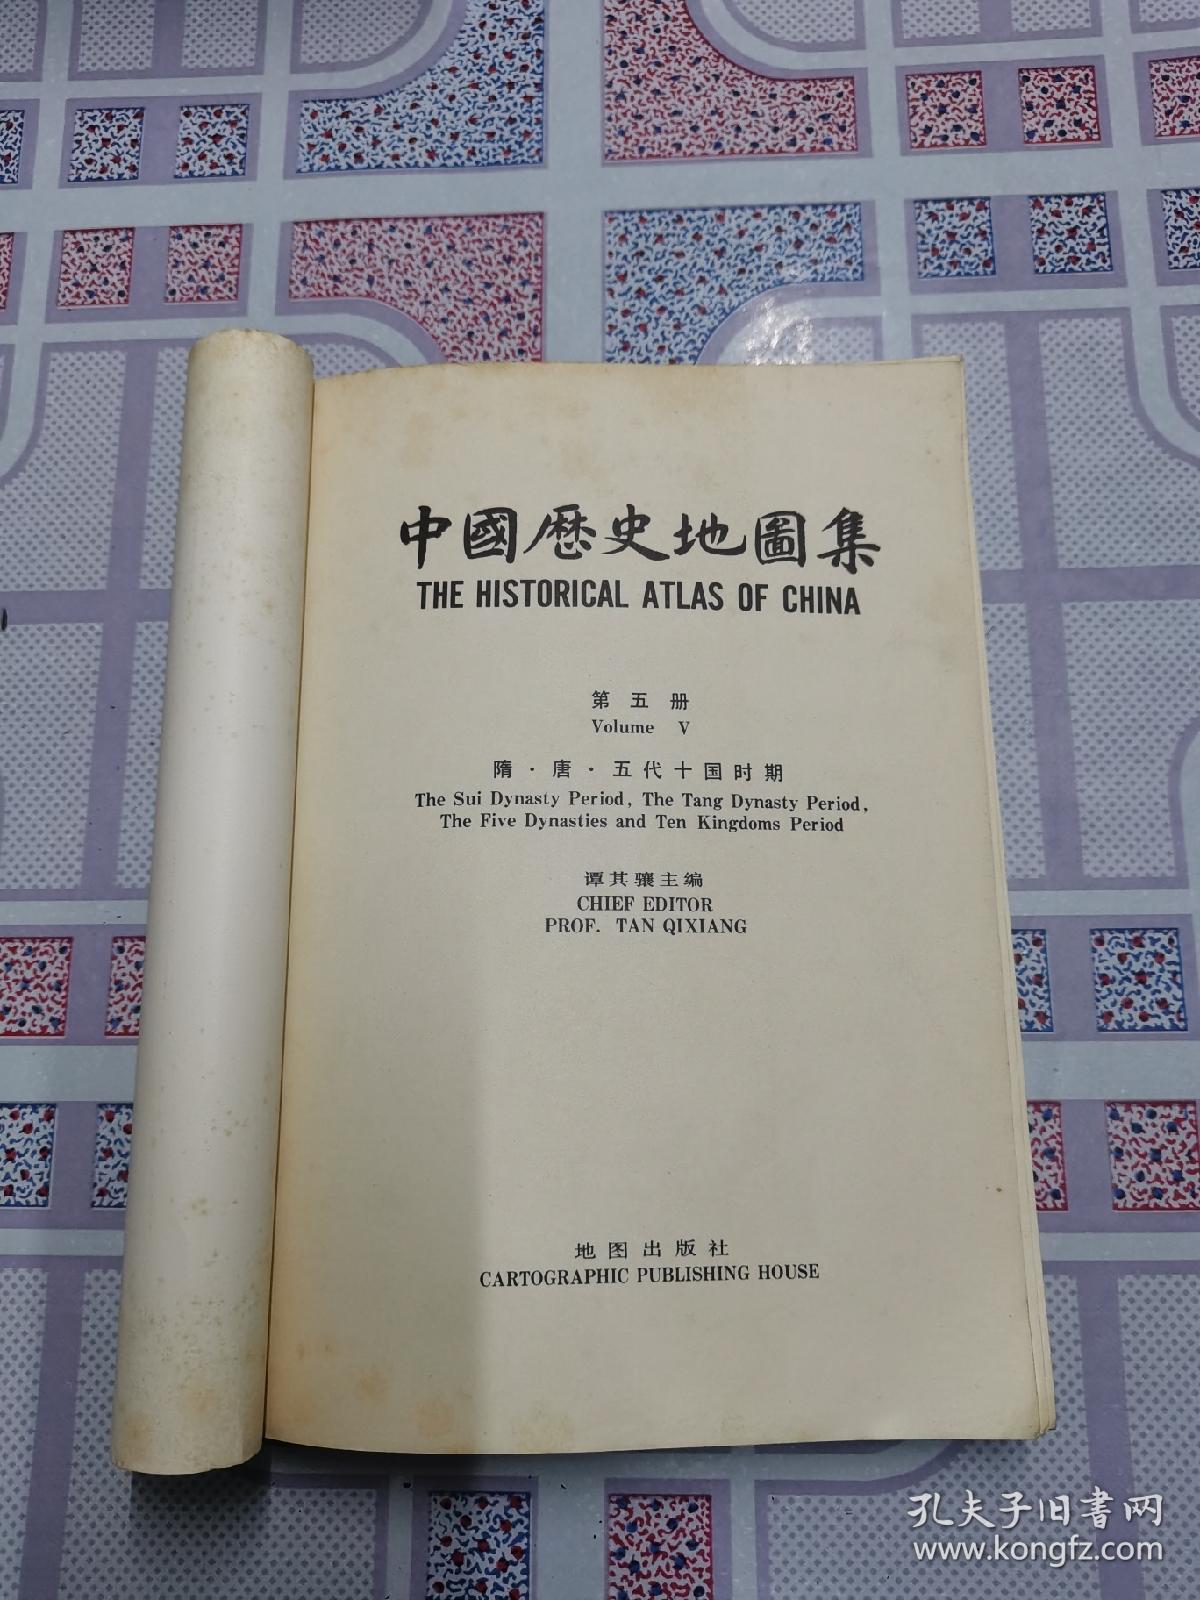 《中国历史地图集》第五册隋·唐·五代十国时期